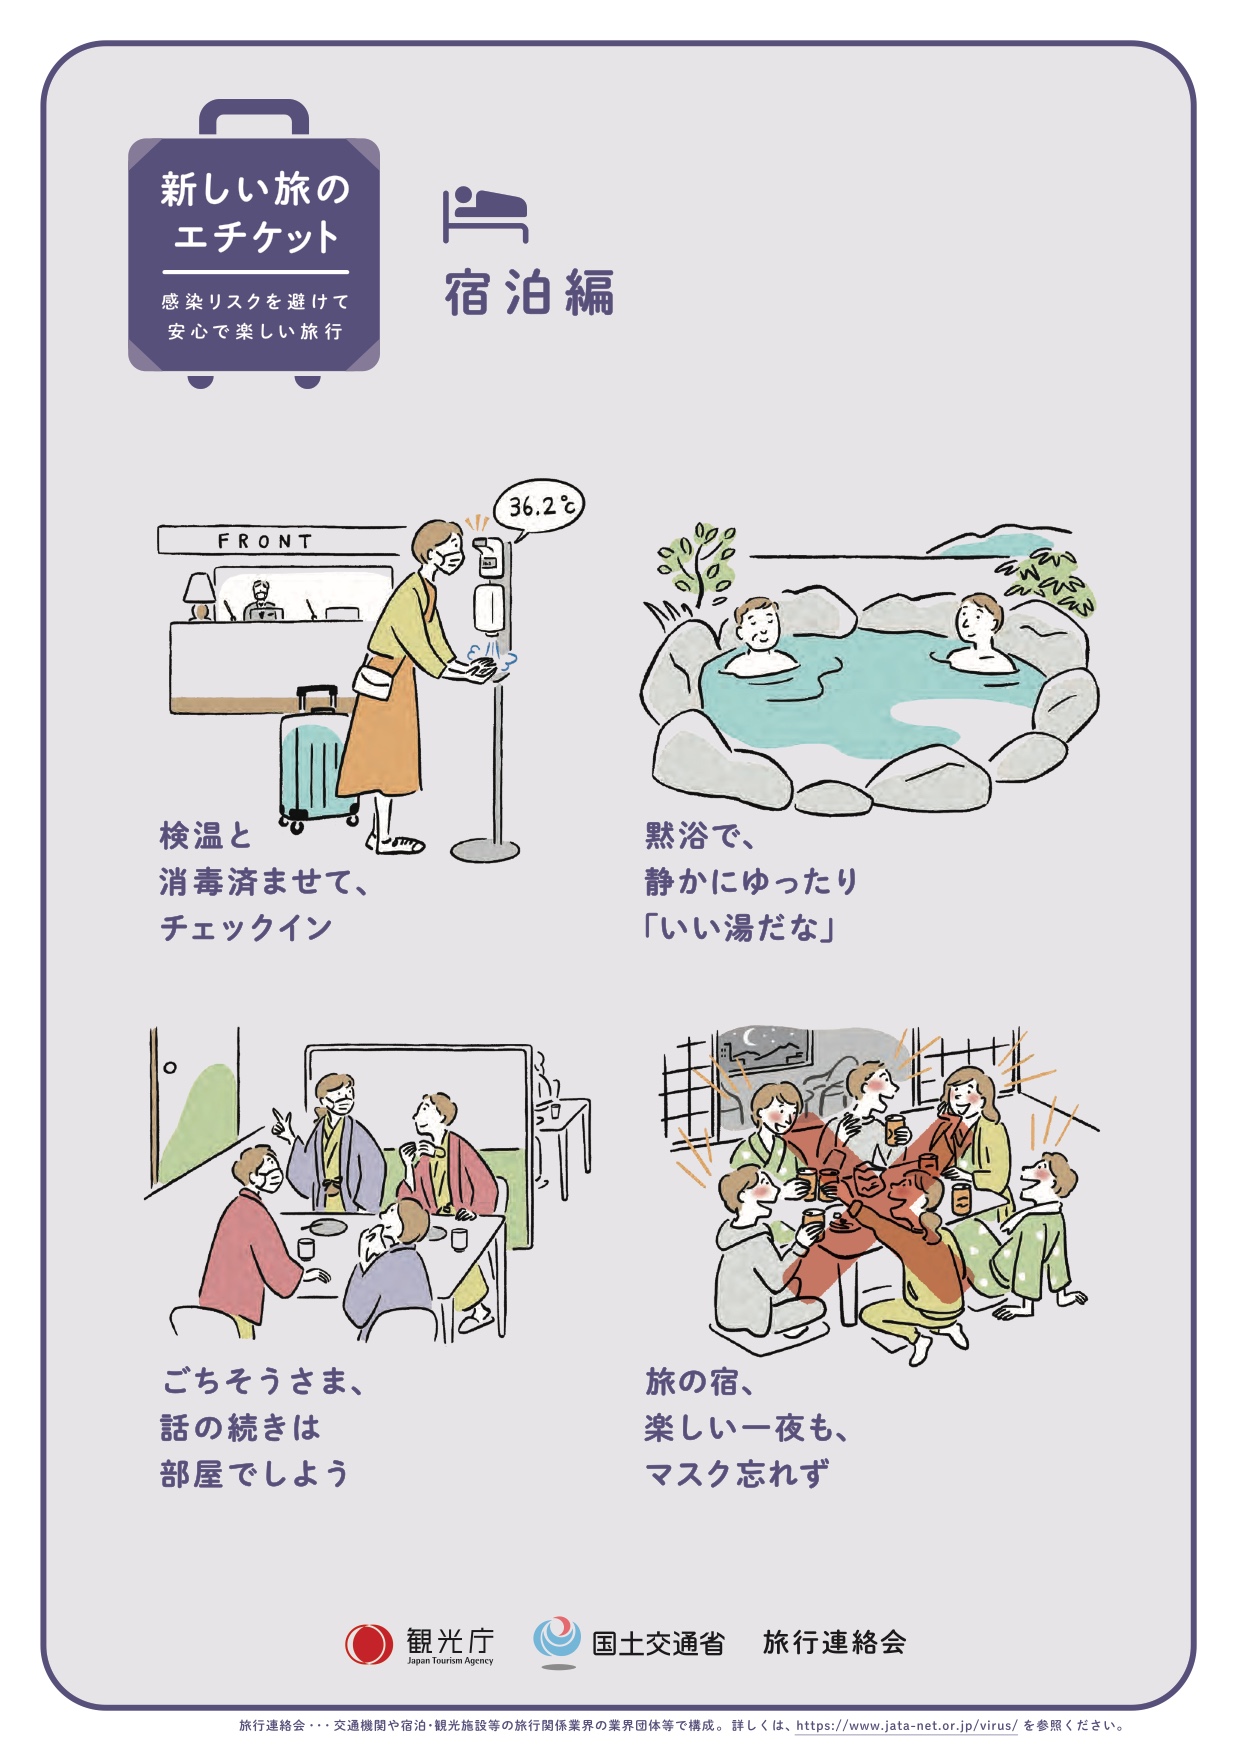 Sich im Bad ruhig Verhalten und keine langen Gespräche nach dem Essen im Ryokan. Beim Zusammensein sollte man zudem die Maske nicht vergessen. | Tourismusbehörde Japan